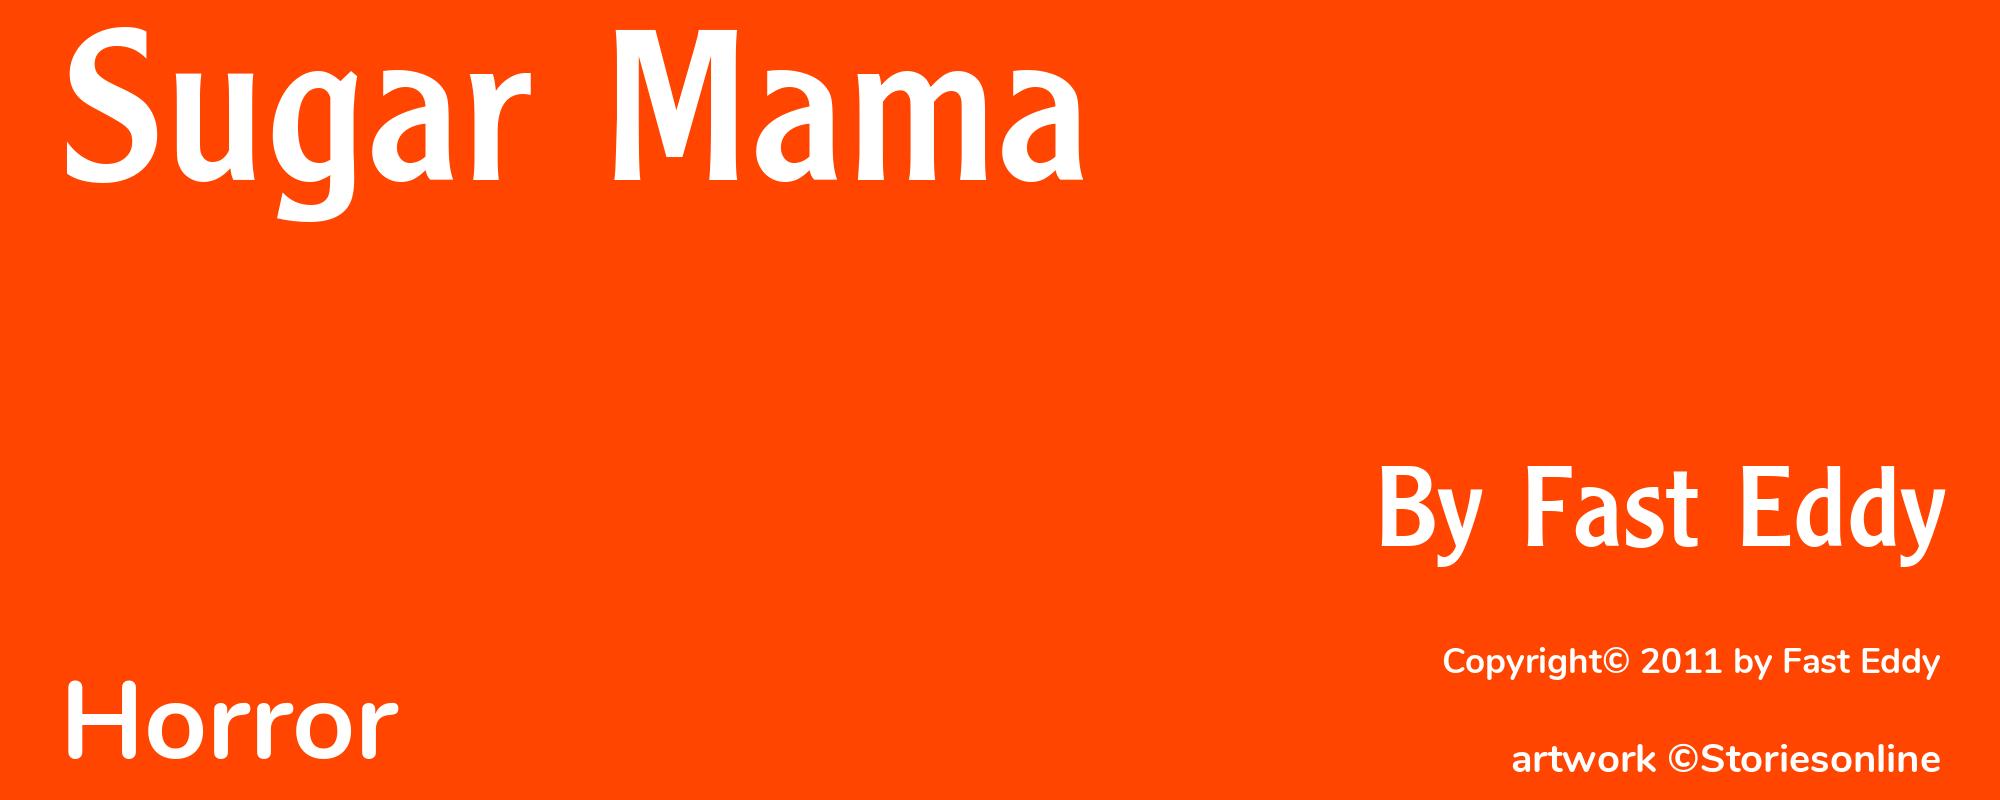 Sugar Mama - Cover